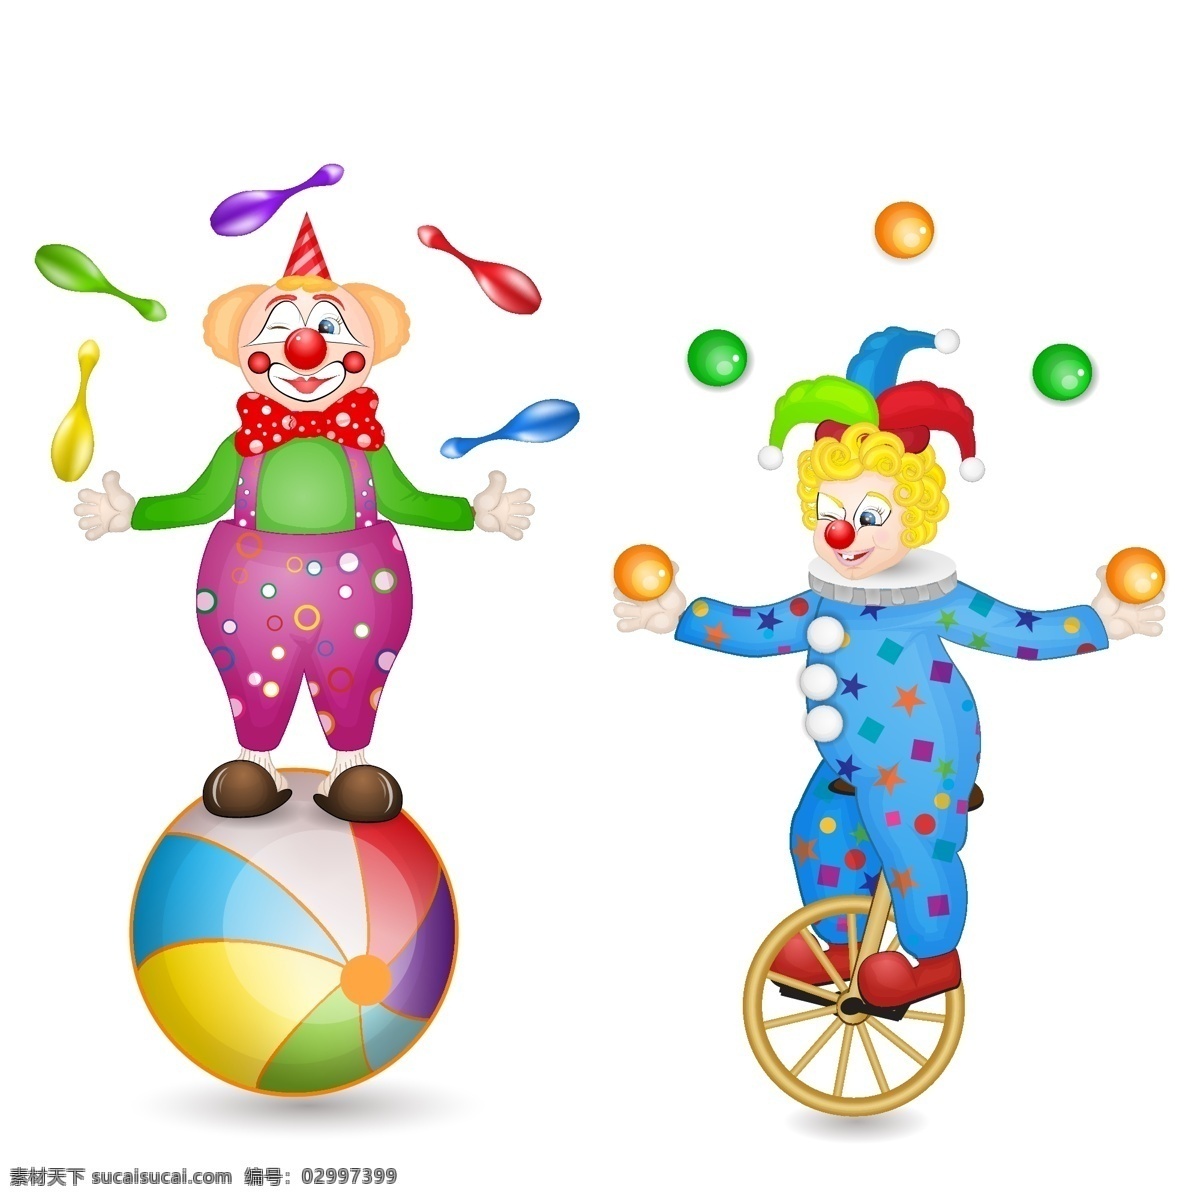 马戏团 小丑 矢量 彩色 球 矢量素材 设计素材